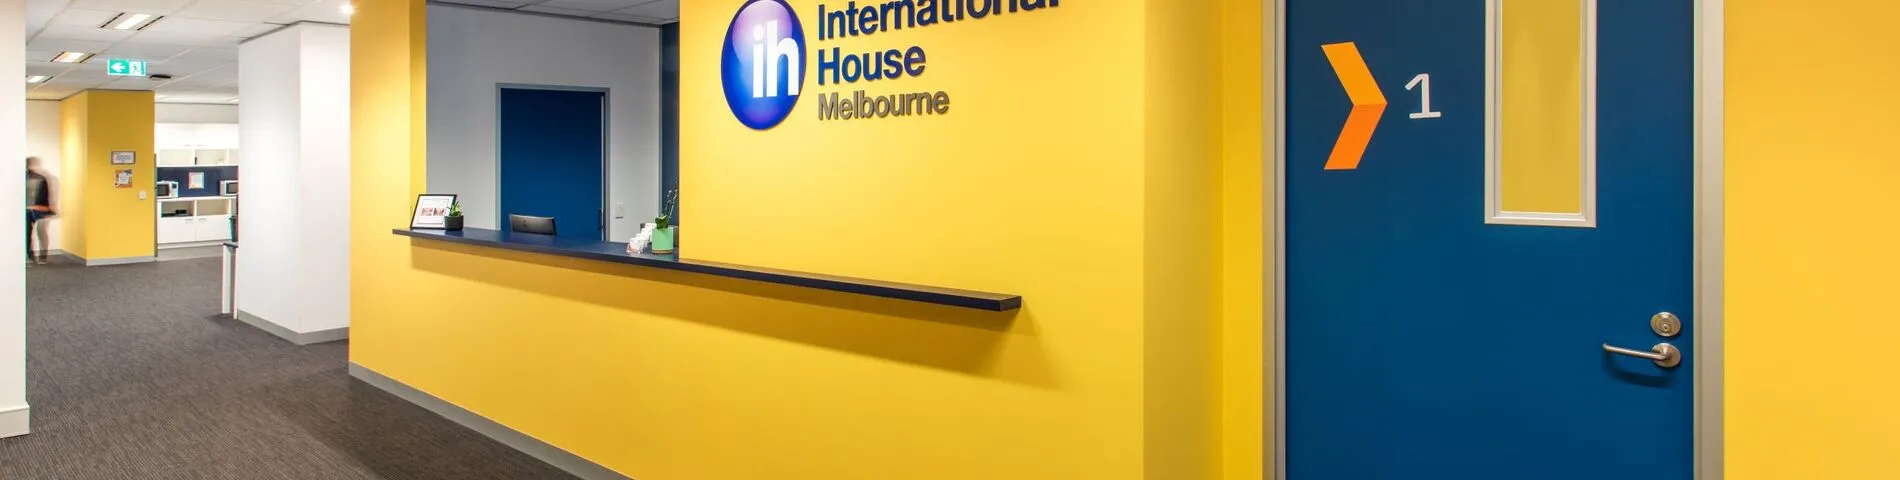 International House snímek 1	